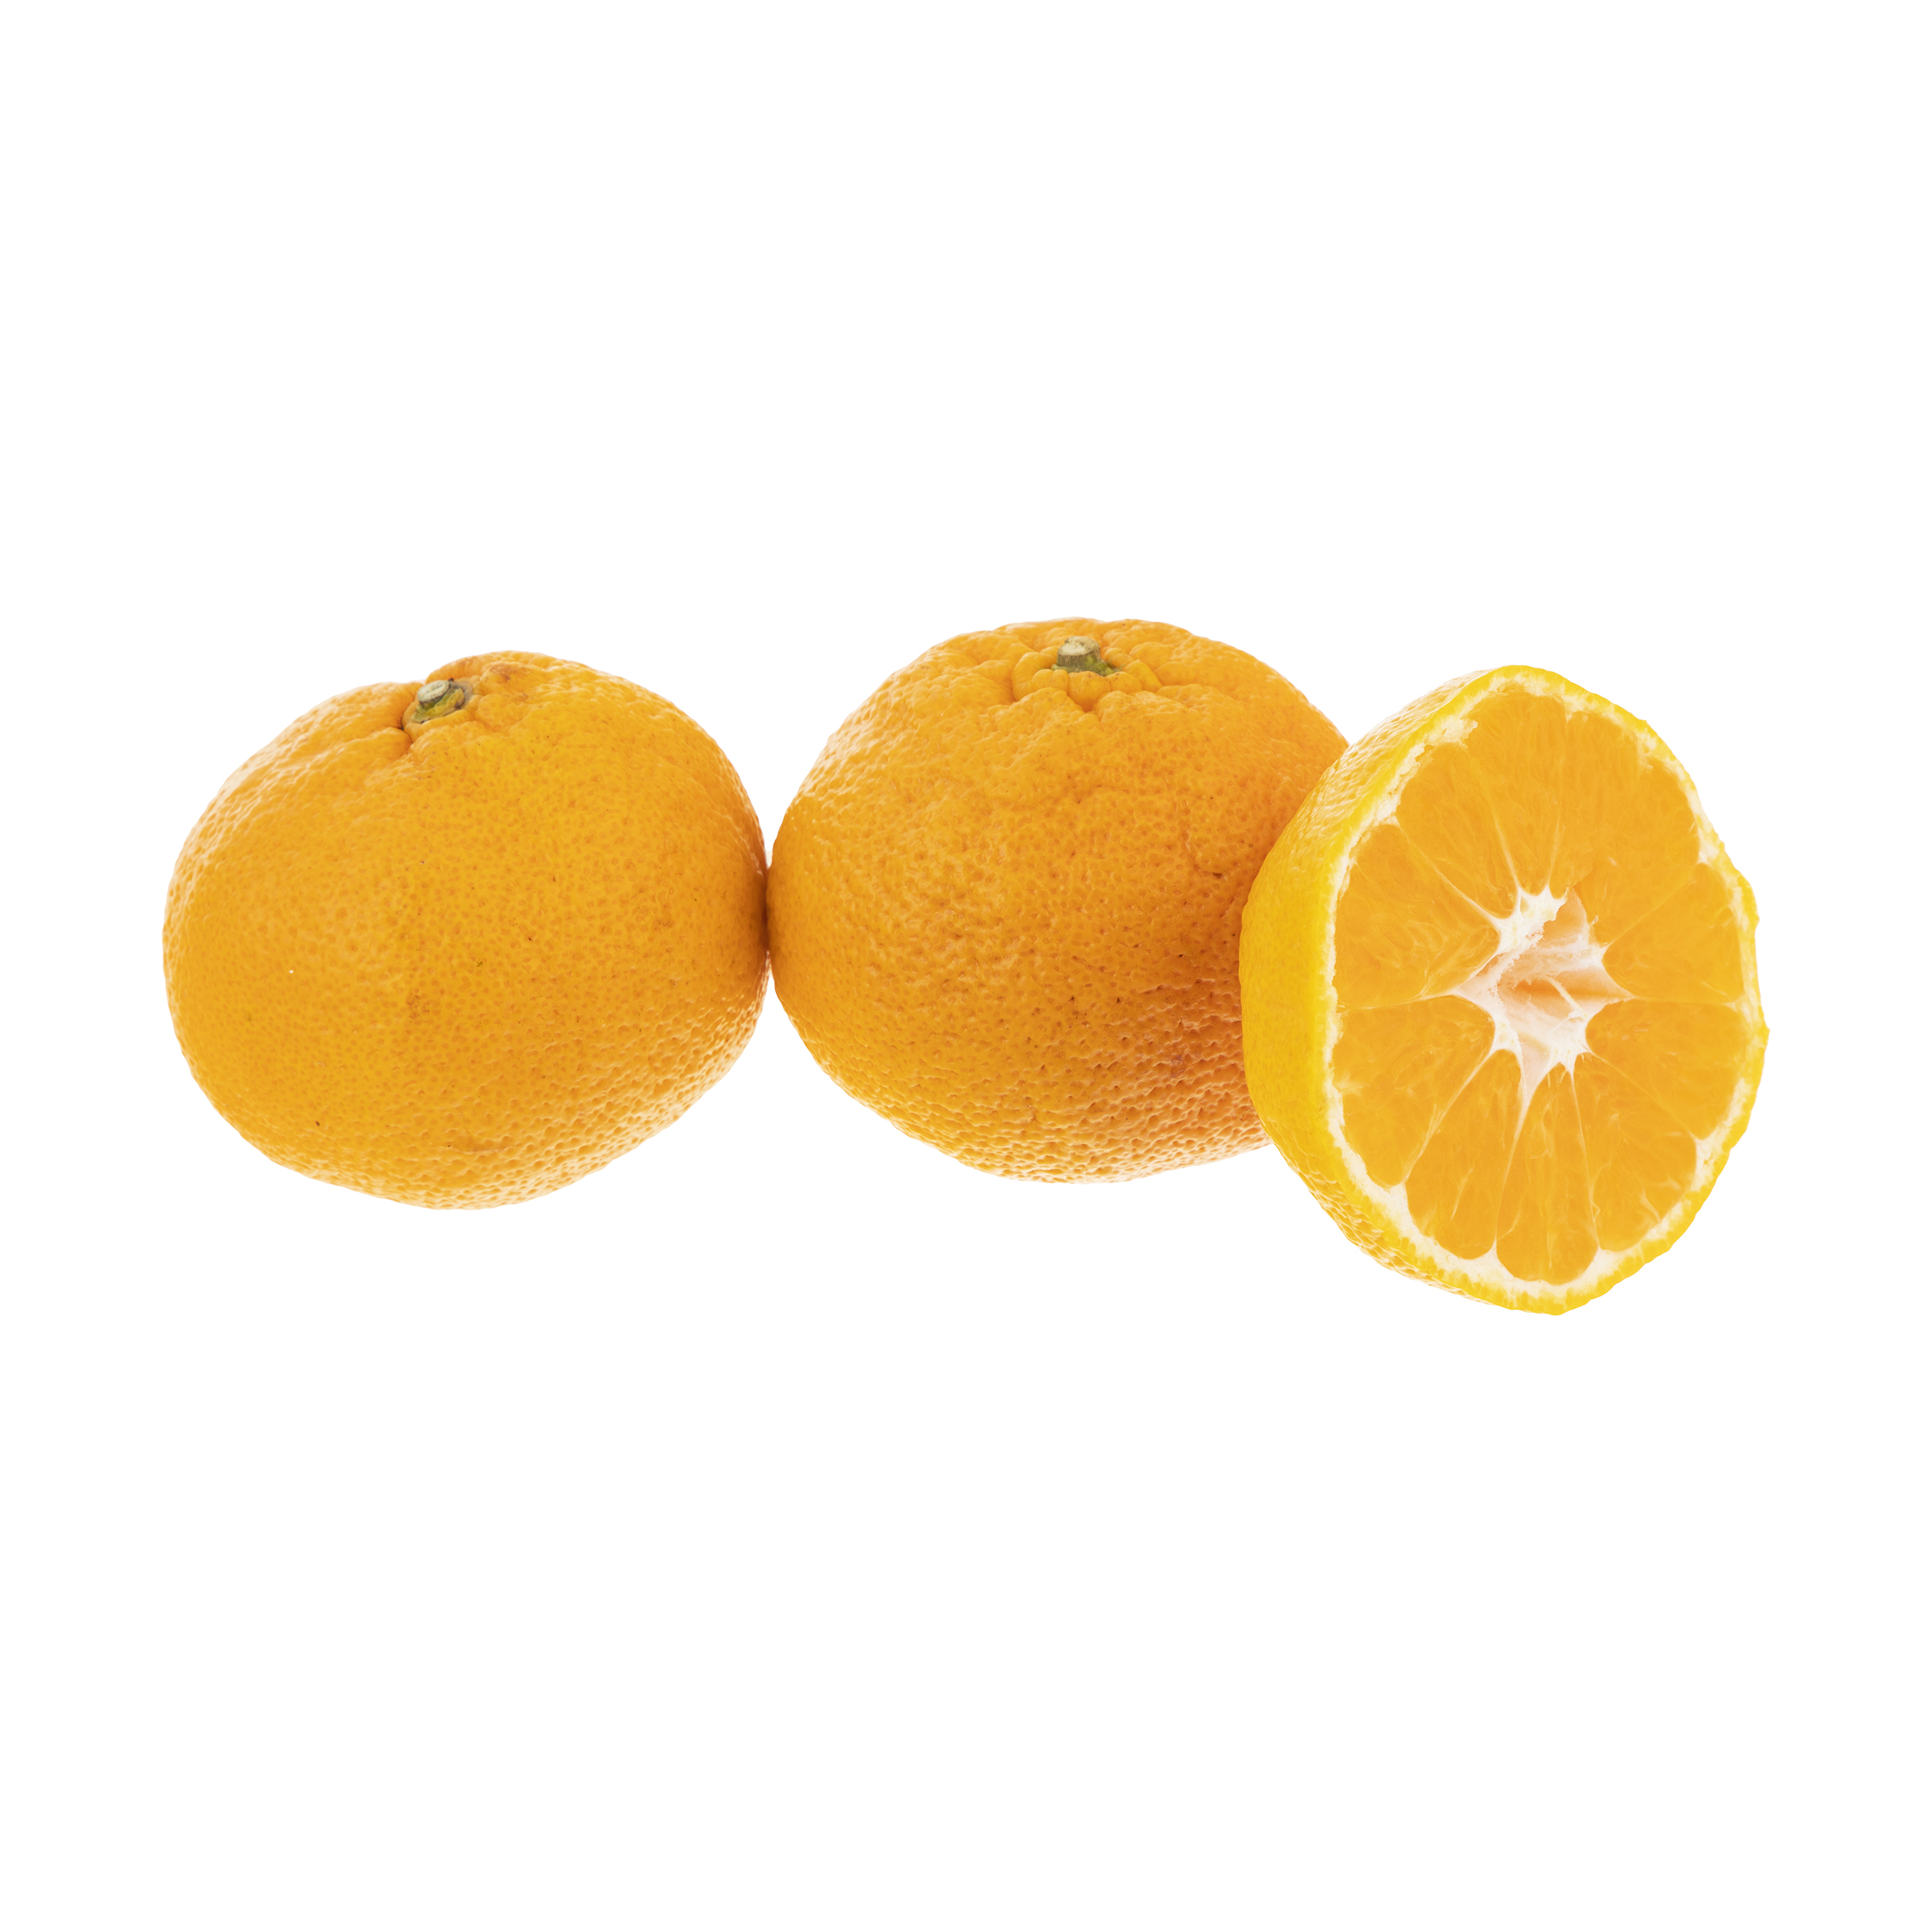 نارنگی میوکات - 1 کیلوگرم